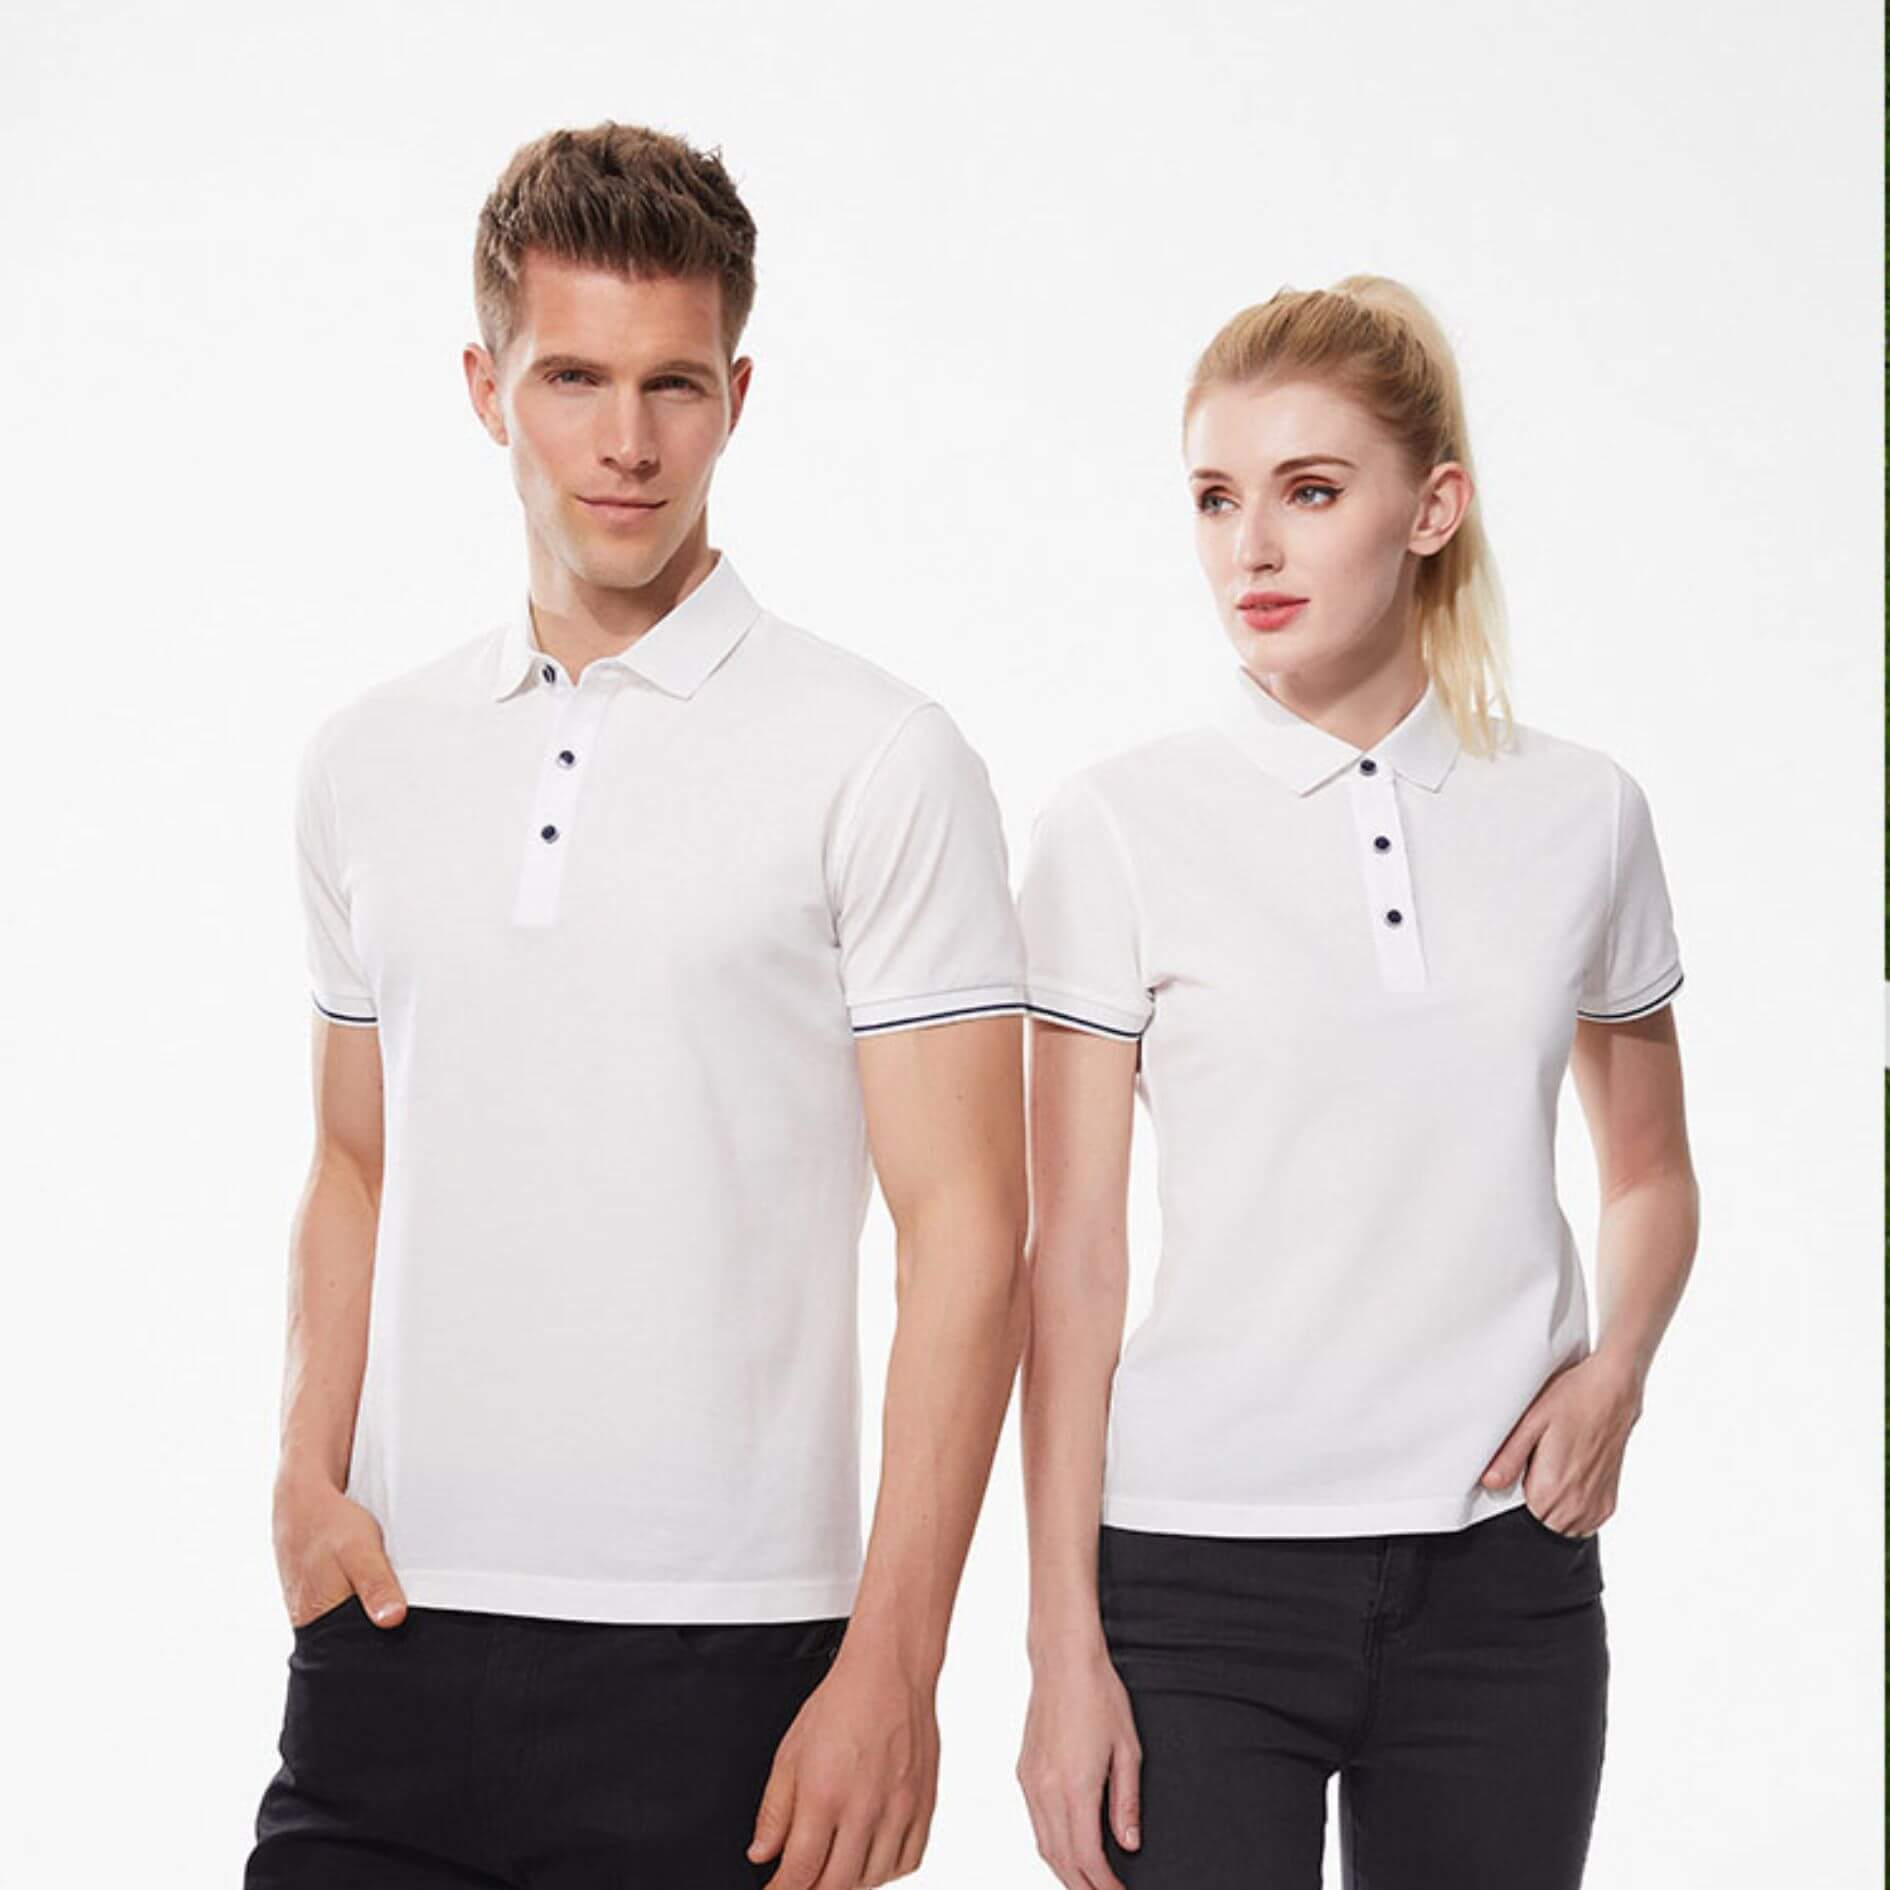 Polo恤, Polo恤衫, Polo Shirt香港_ref02